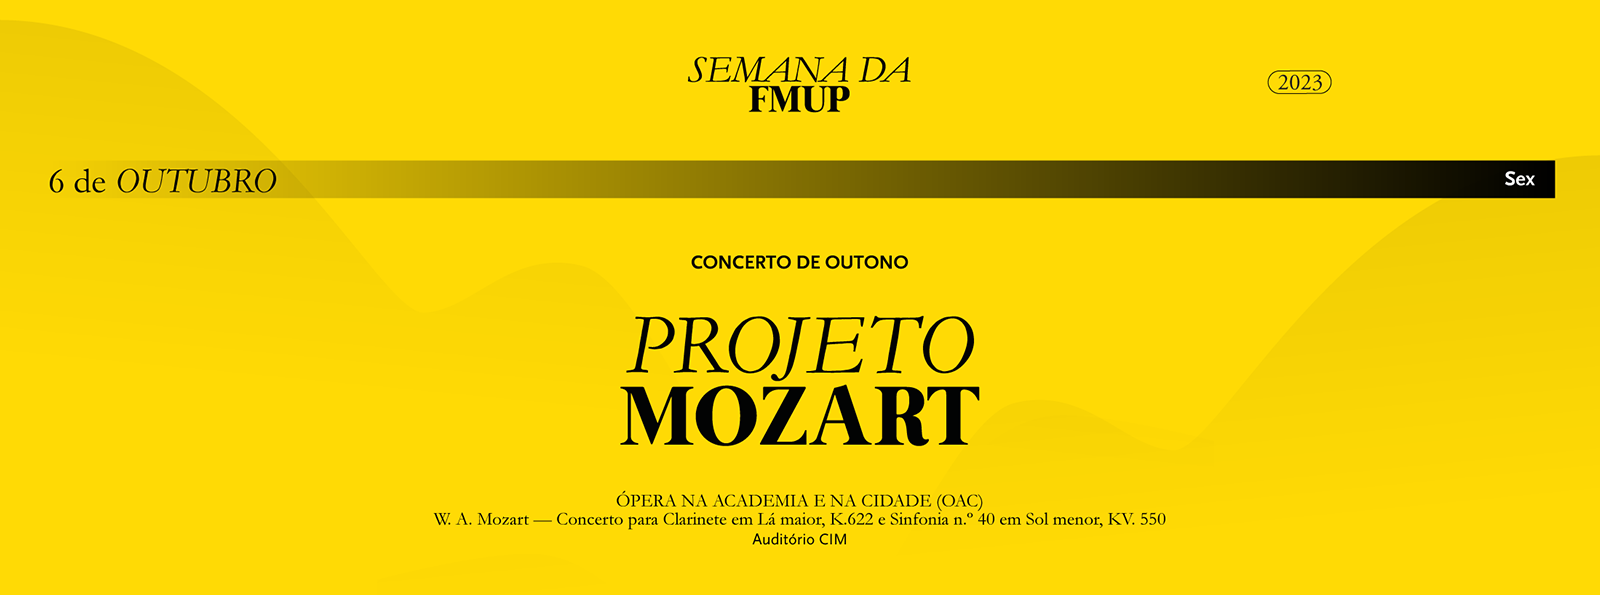 FMUP recebe Mozart em Concerto de Outono único